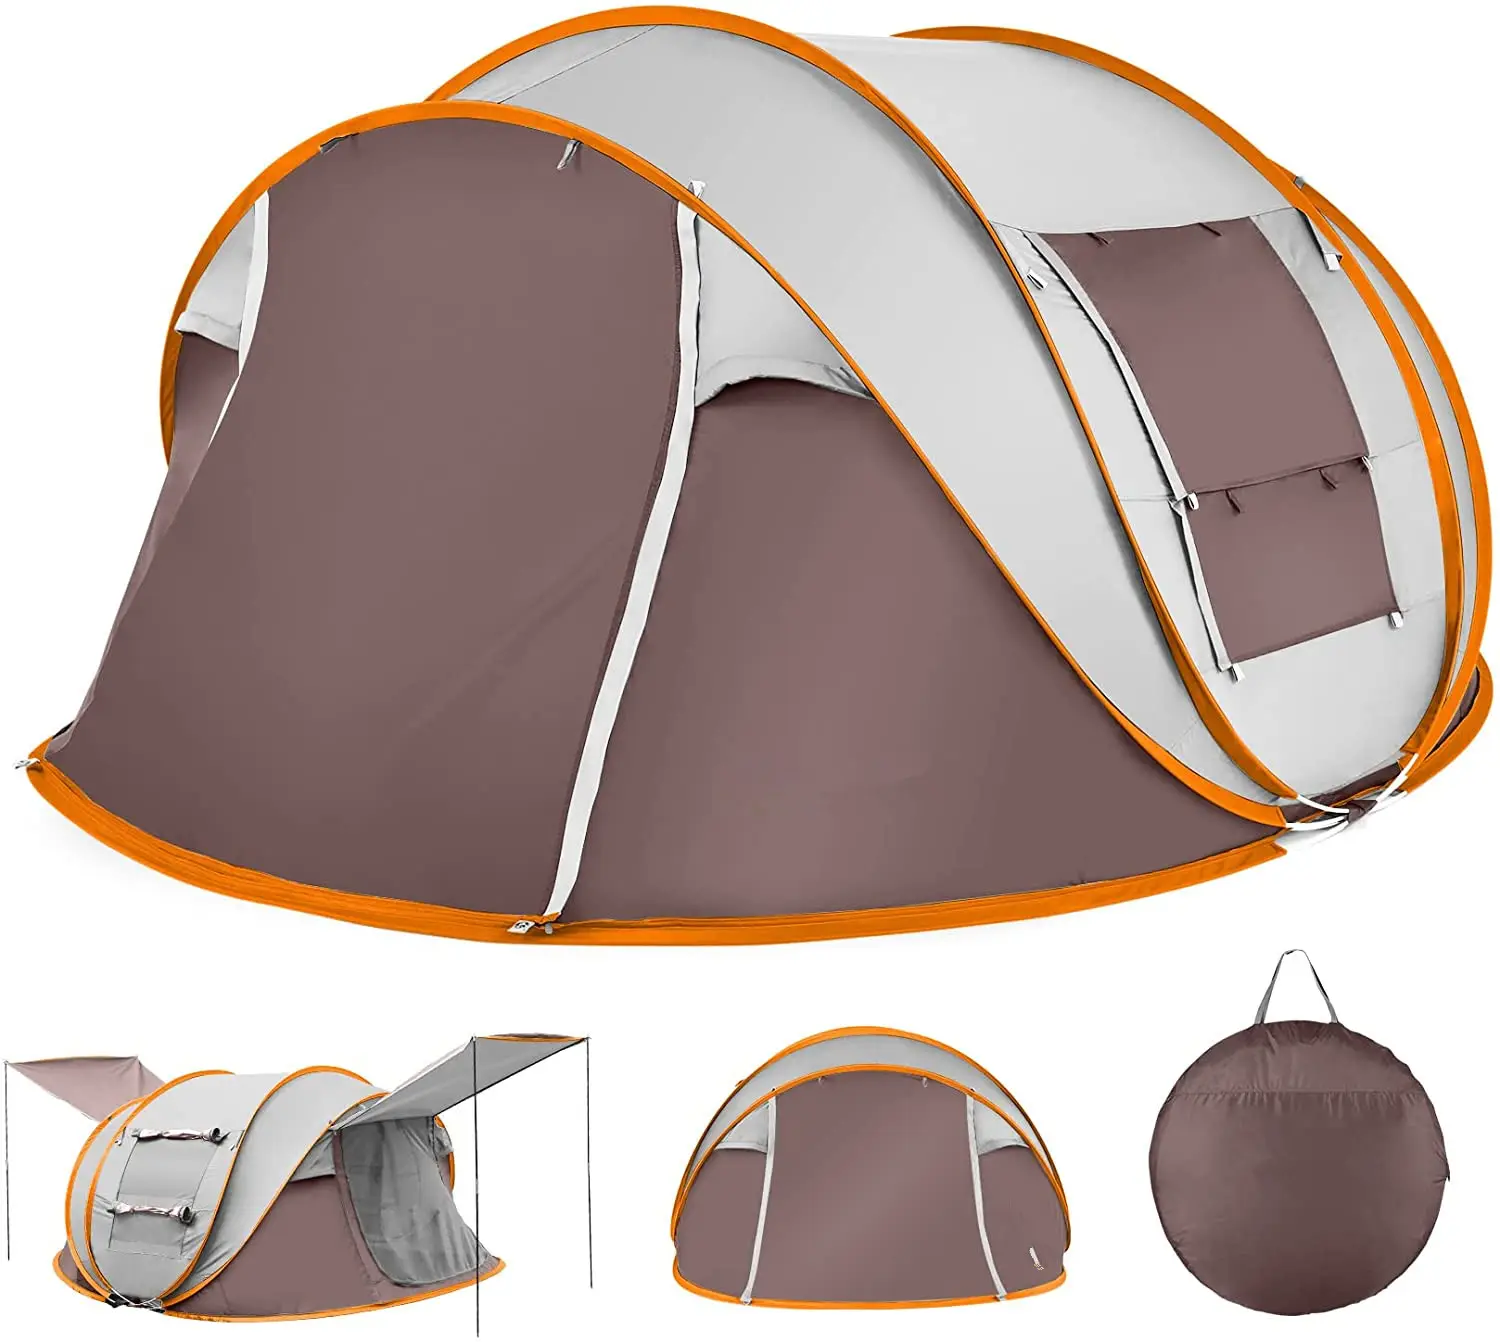 Woqi Waterdichte Draagbare 4-10 Personen Outdoor Camping Tent Opgezet In 60 Seconden Te Koop